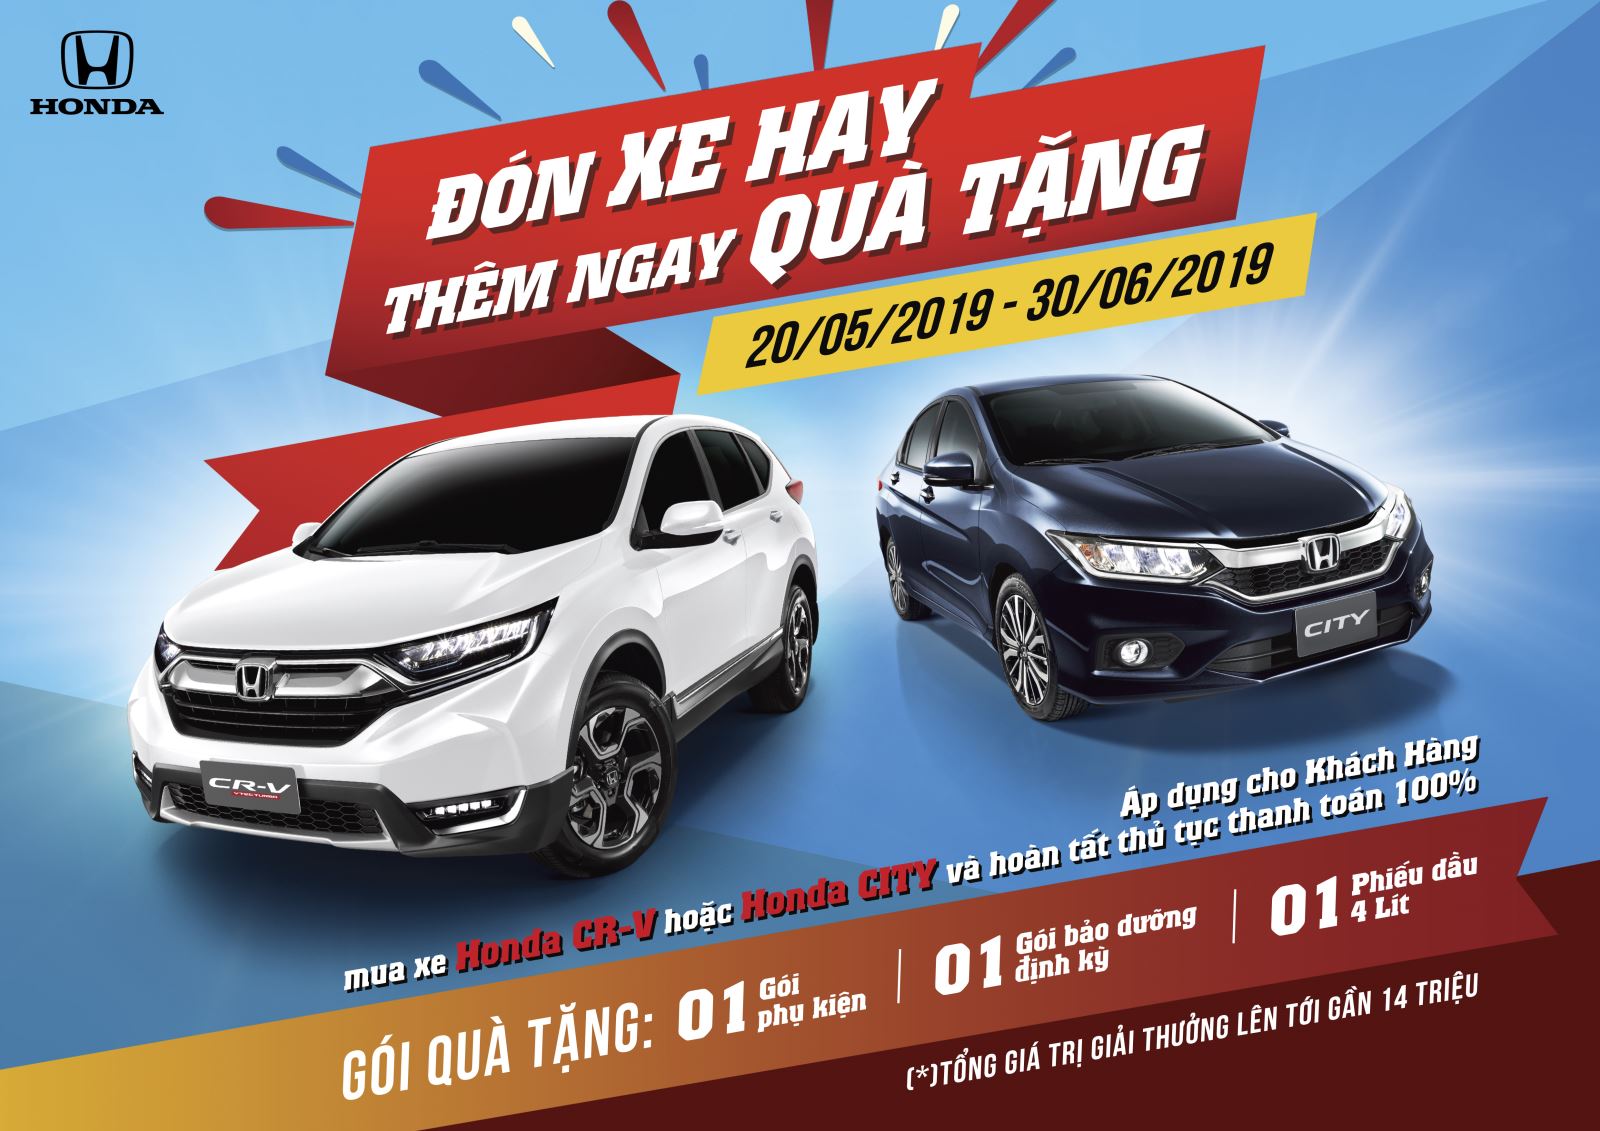 Honda Việt Nam triển khai chương trình khuyến mại “ĐÓN XE HAY – THÊM NGAY QUÀ TẶNG“